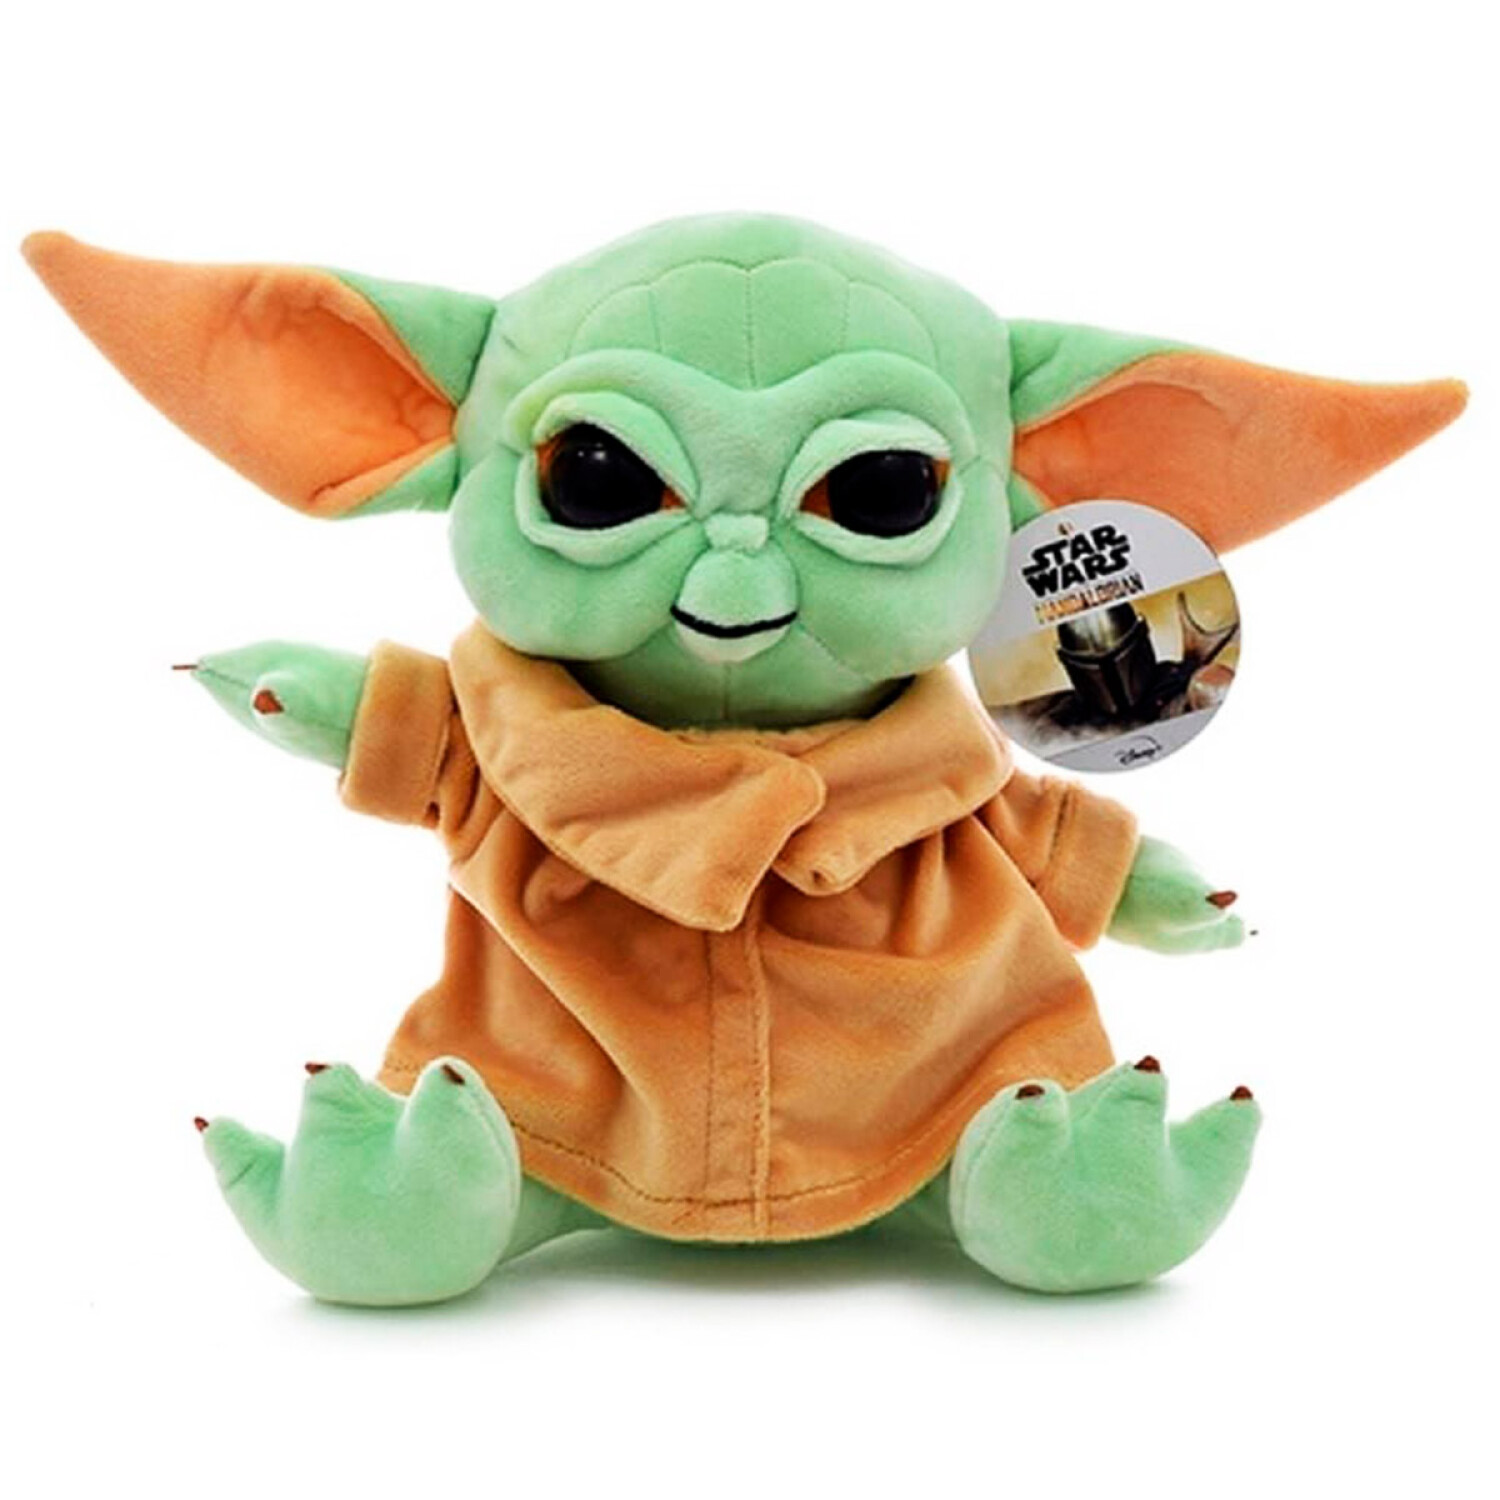  Galerie Baby Yoda - Juguete de peluche y caramelos, juego de  regalo para niños de Star Wars Mandalorian, 8 pulgadas : Comida Gourmet y  Alimentos